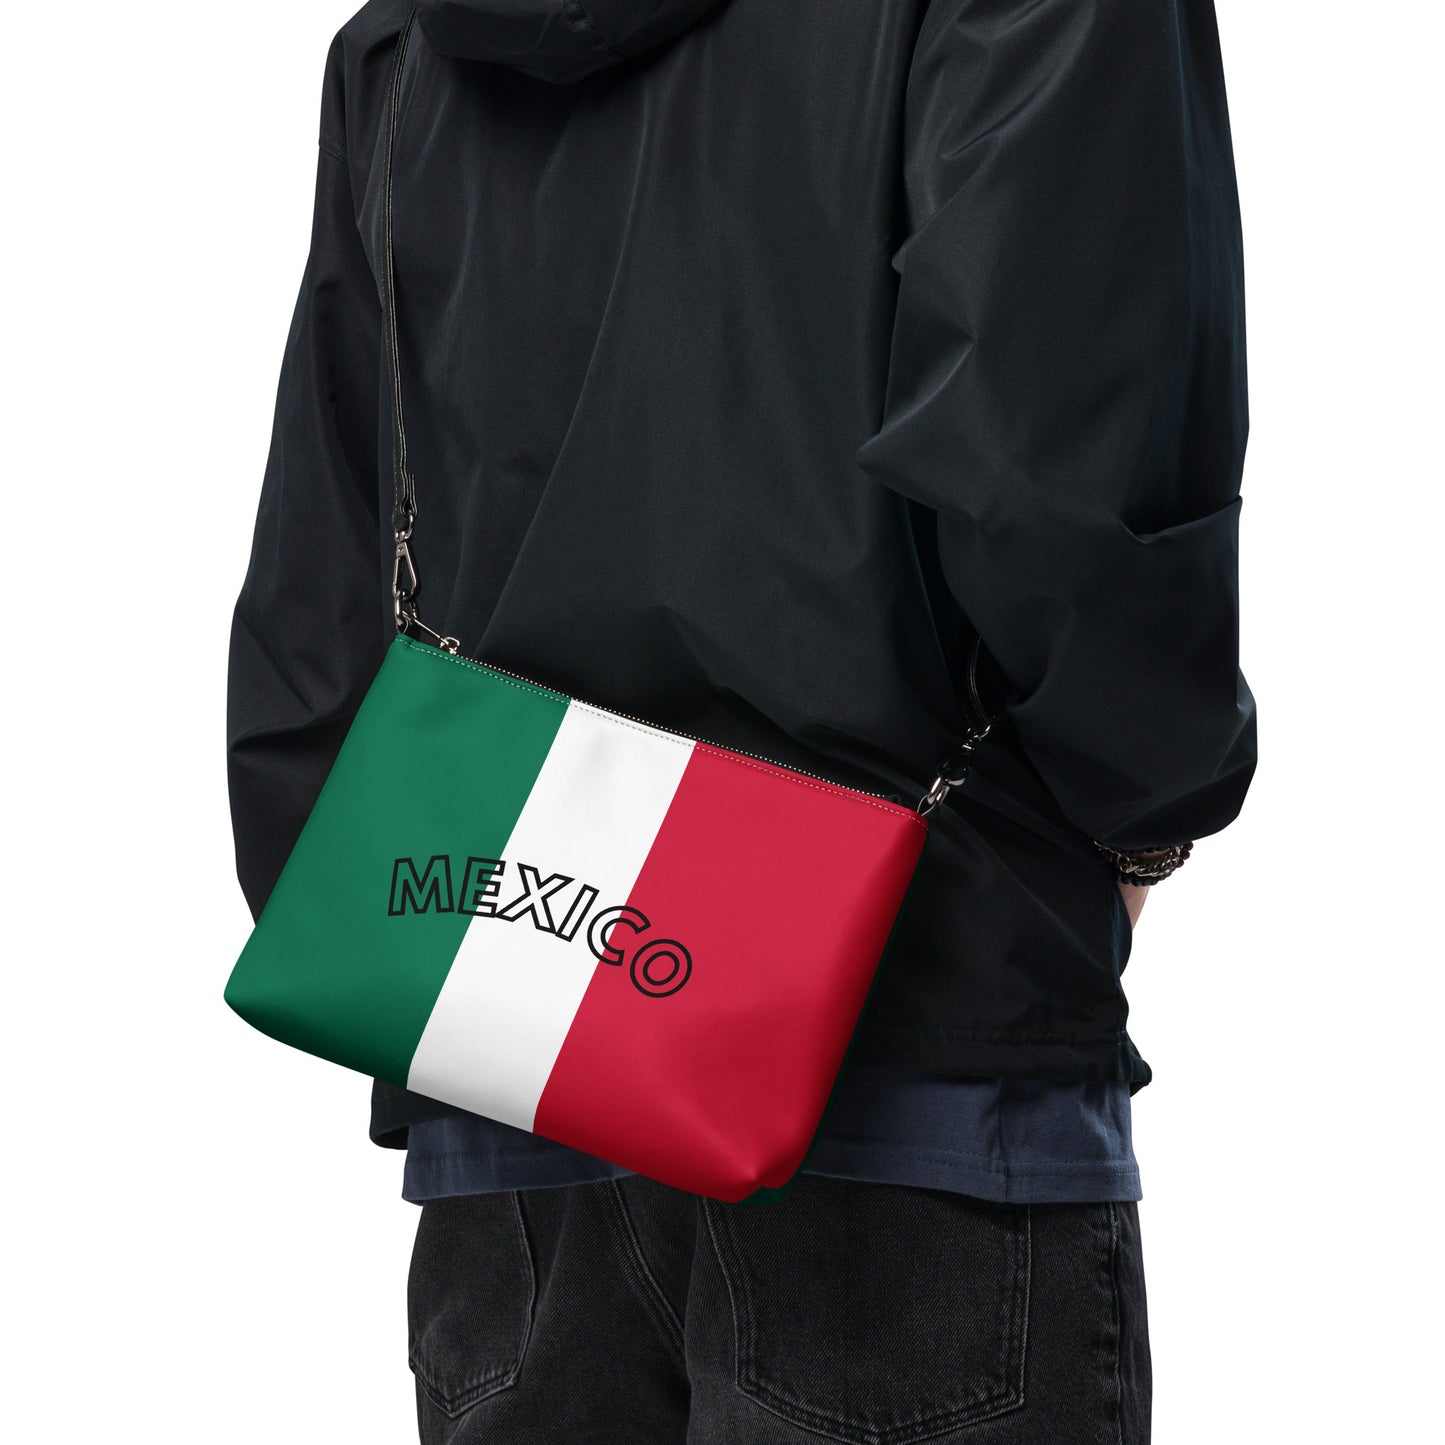 Mexico Crossbody bag